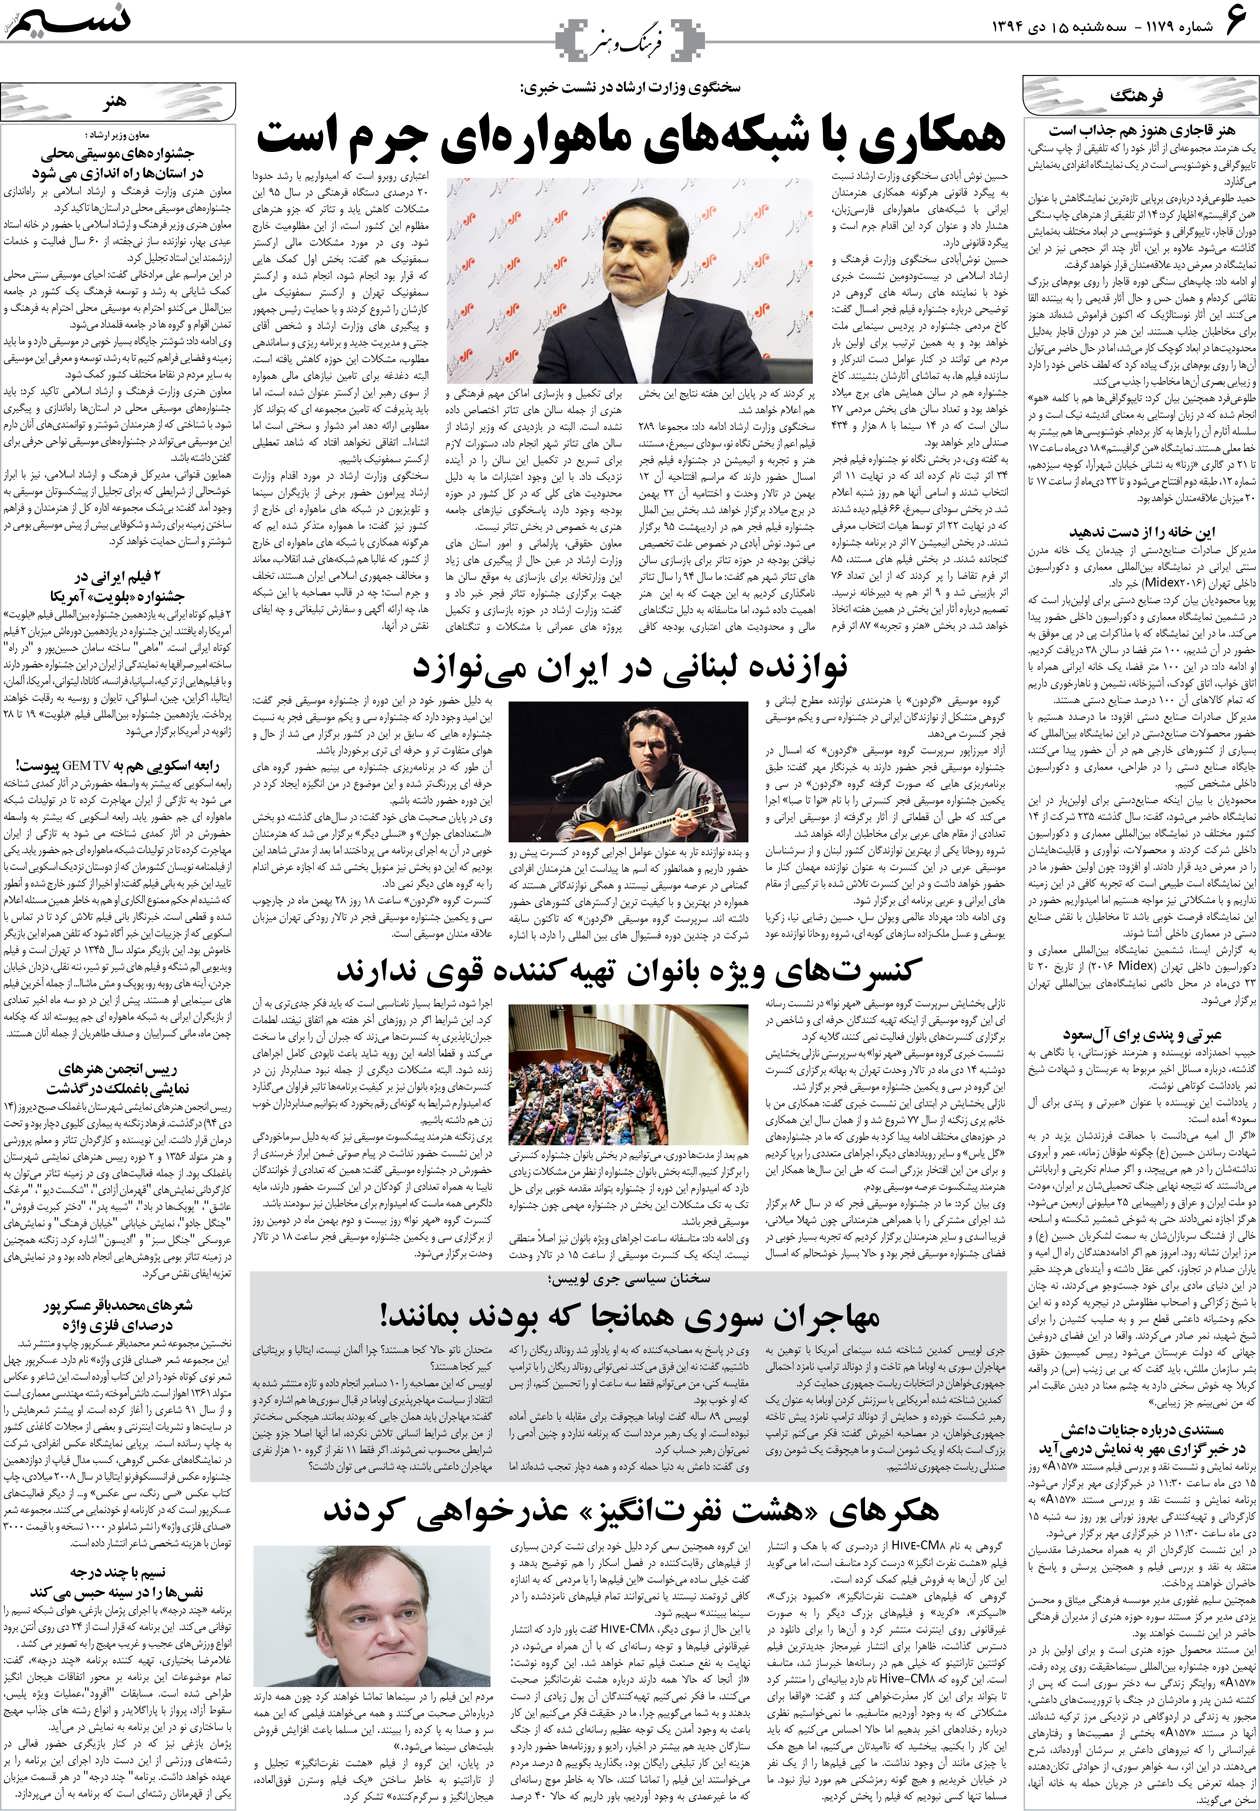 صفحه فرهنگ و هنر روزنامه نسیم شماره 1179